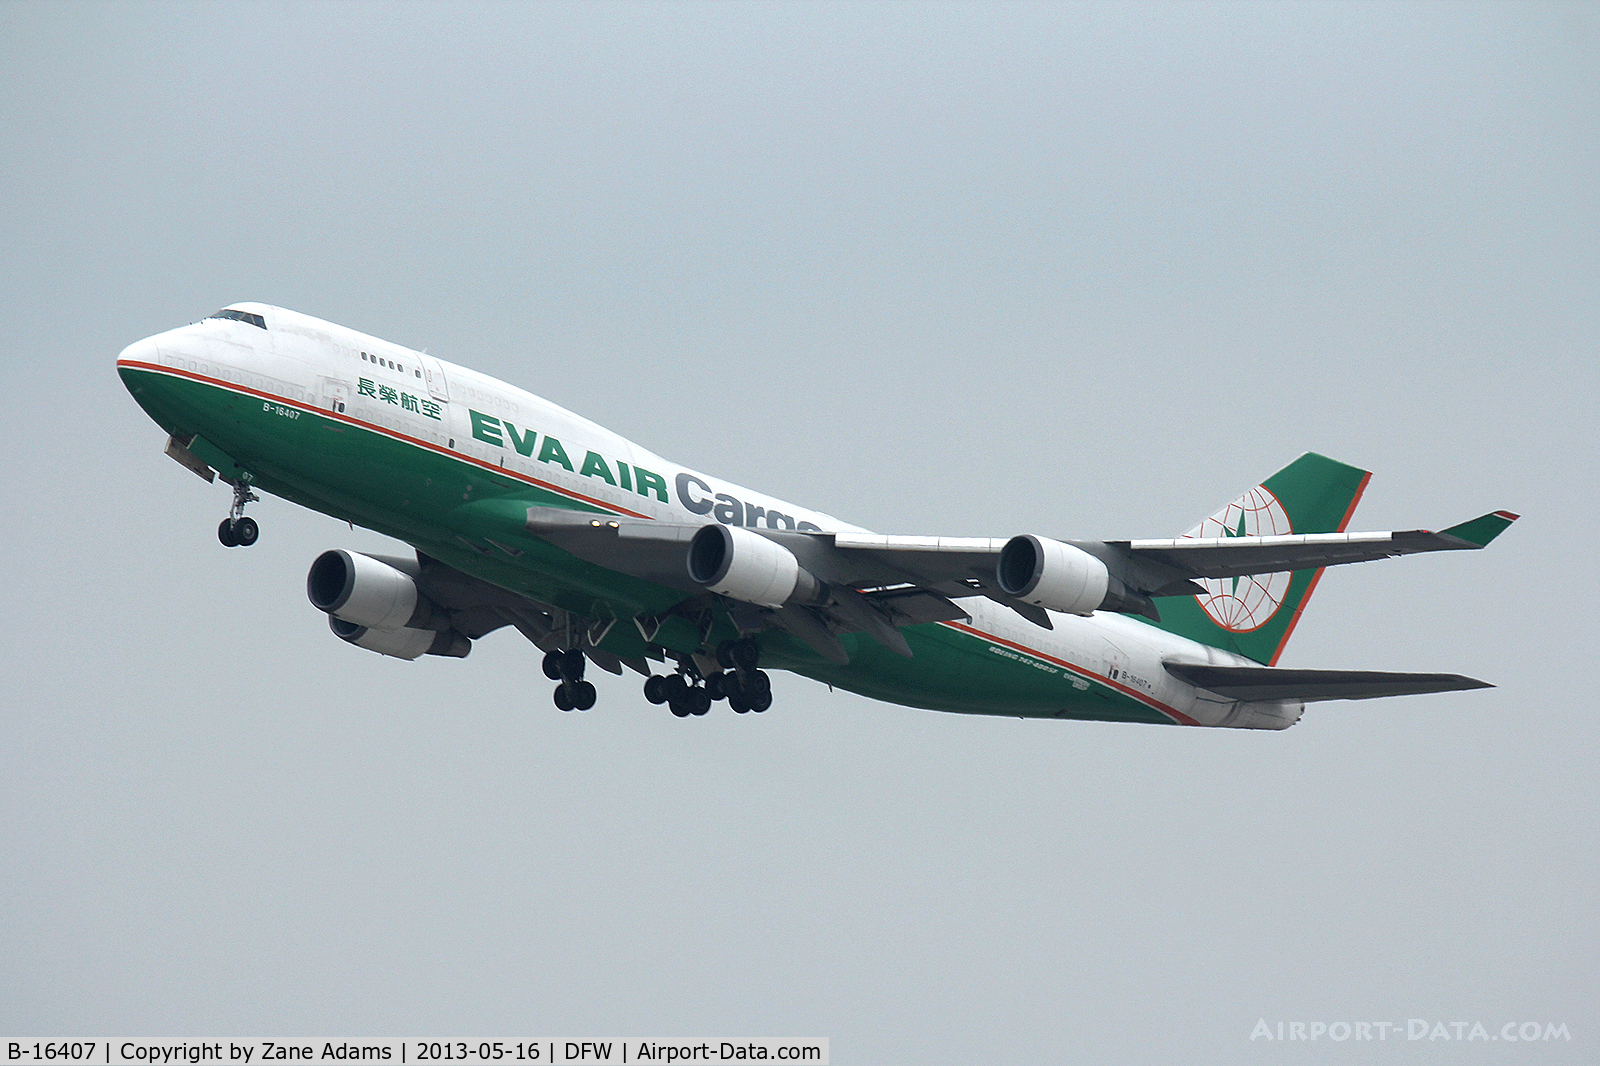 B-16407, 1995 Boeing 747-45E C/N 27899, EVA Air Cargo departing DFW Airport